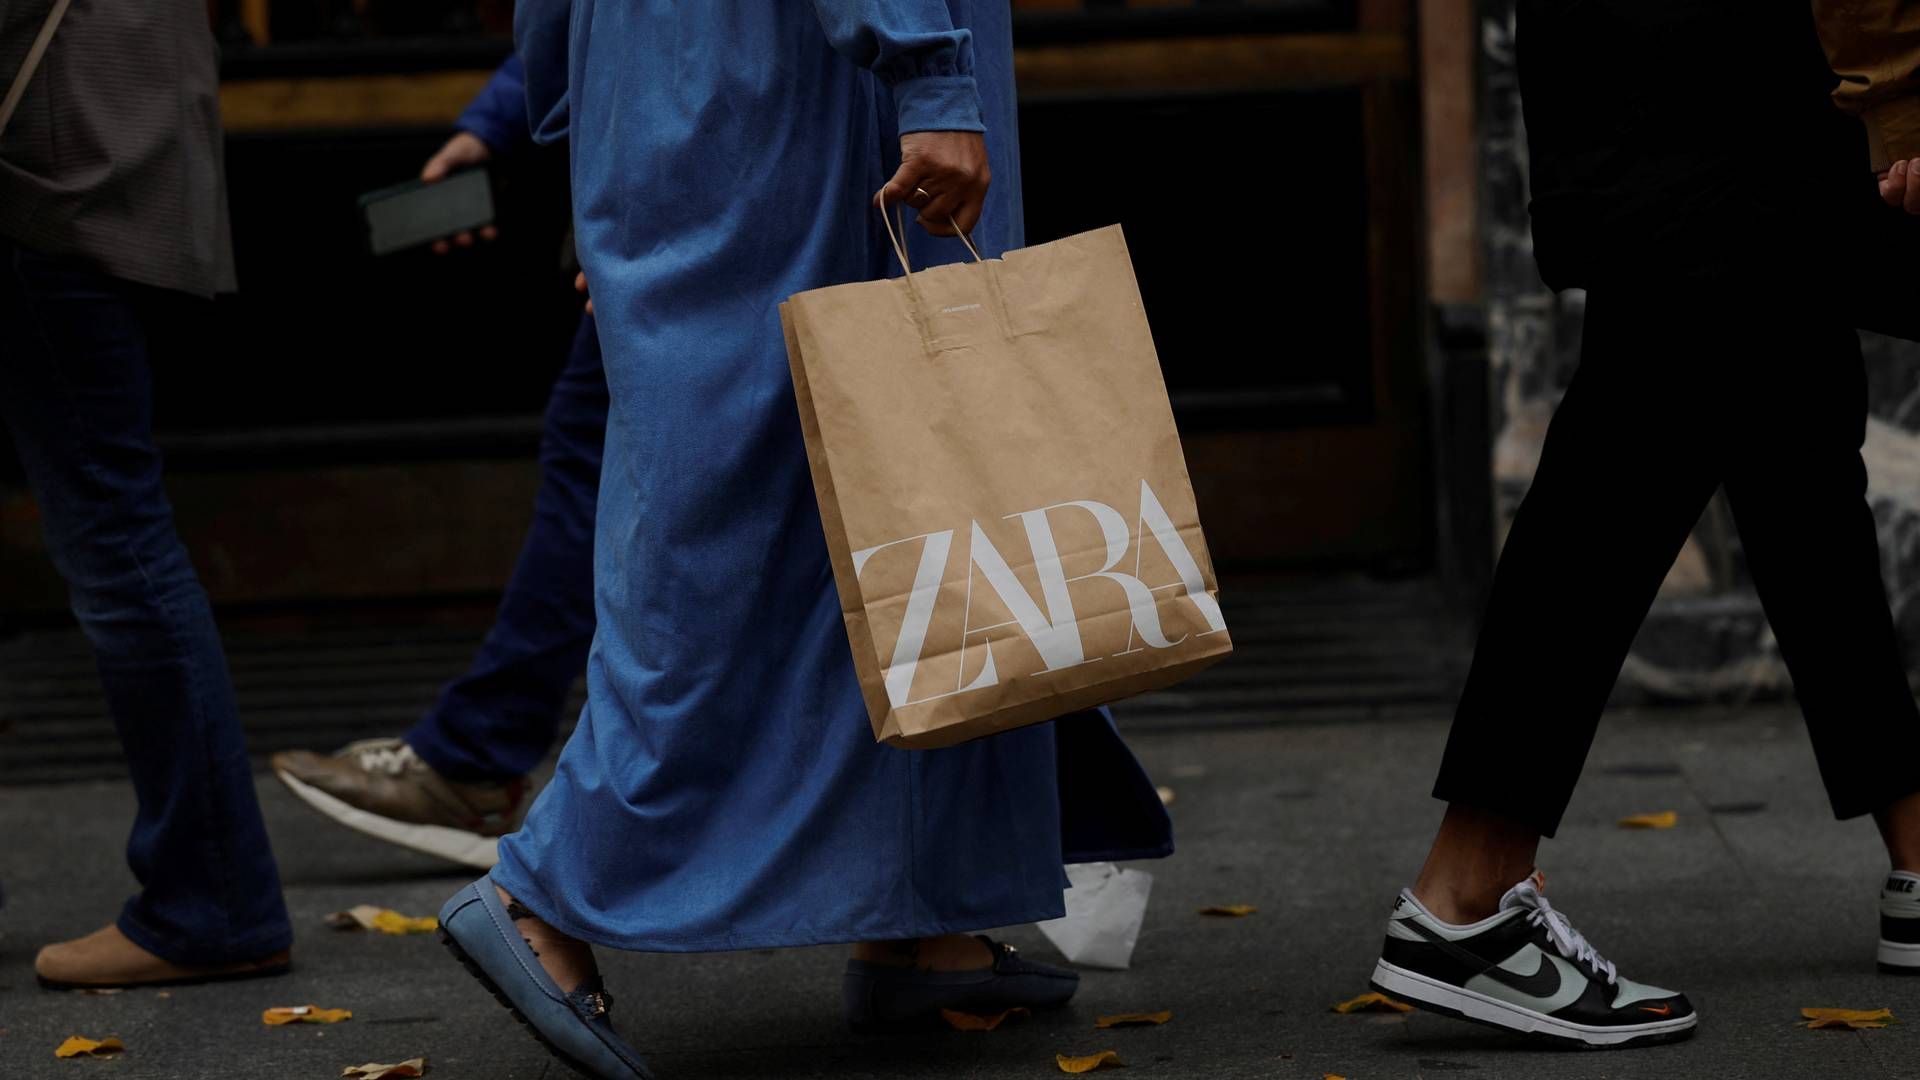 Zara er Inditex' største forretning. Derudover står koncernen bag brands som Pull&Bear, Overspring og Massimo Dutti. | Foto: Vincent West